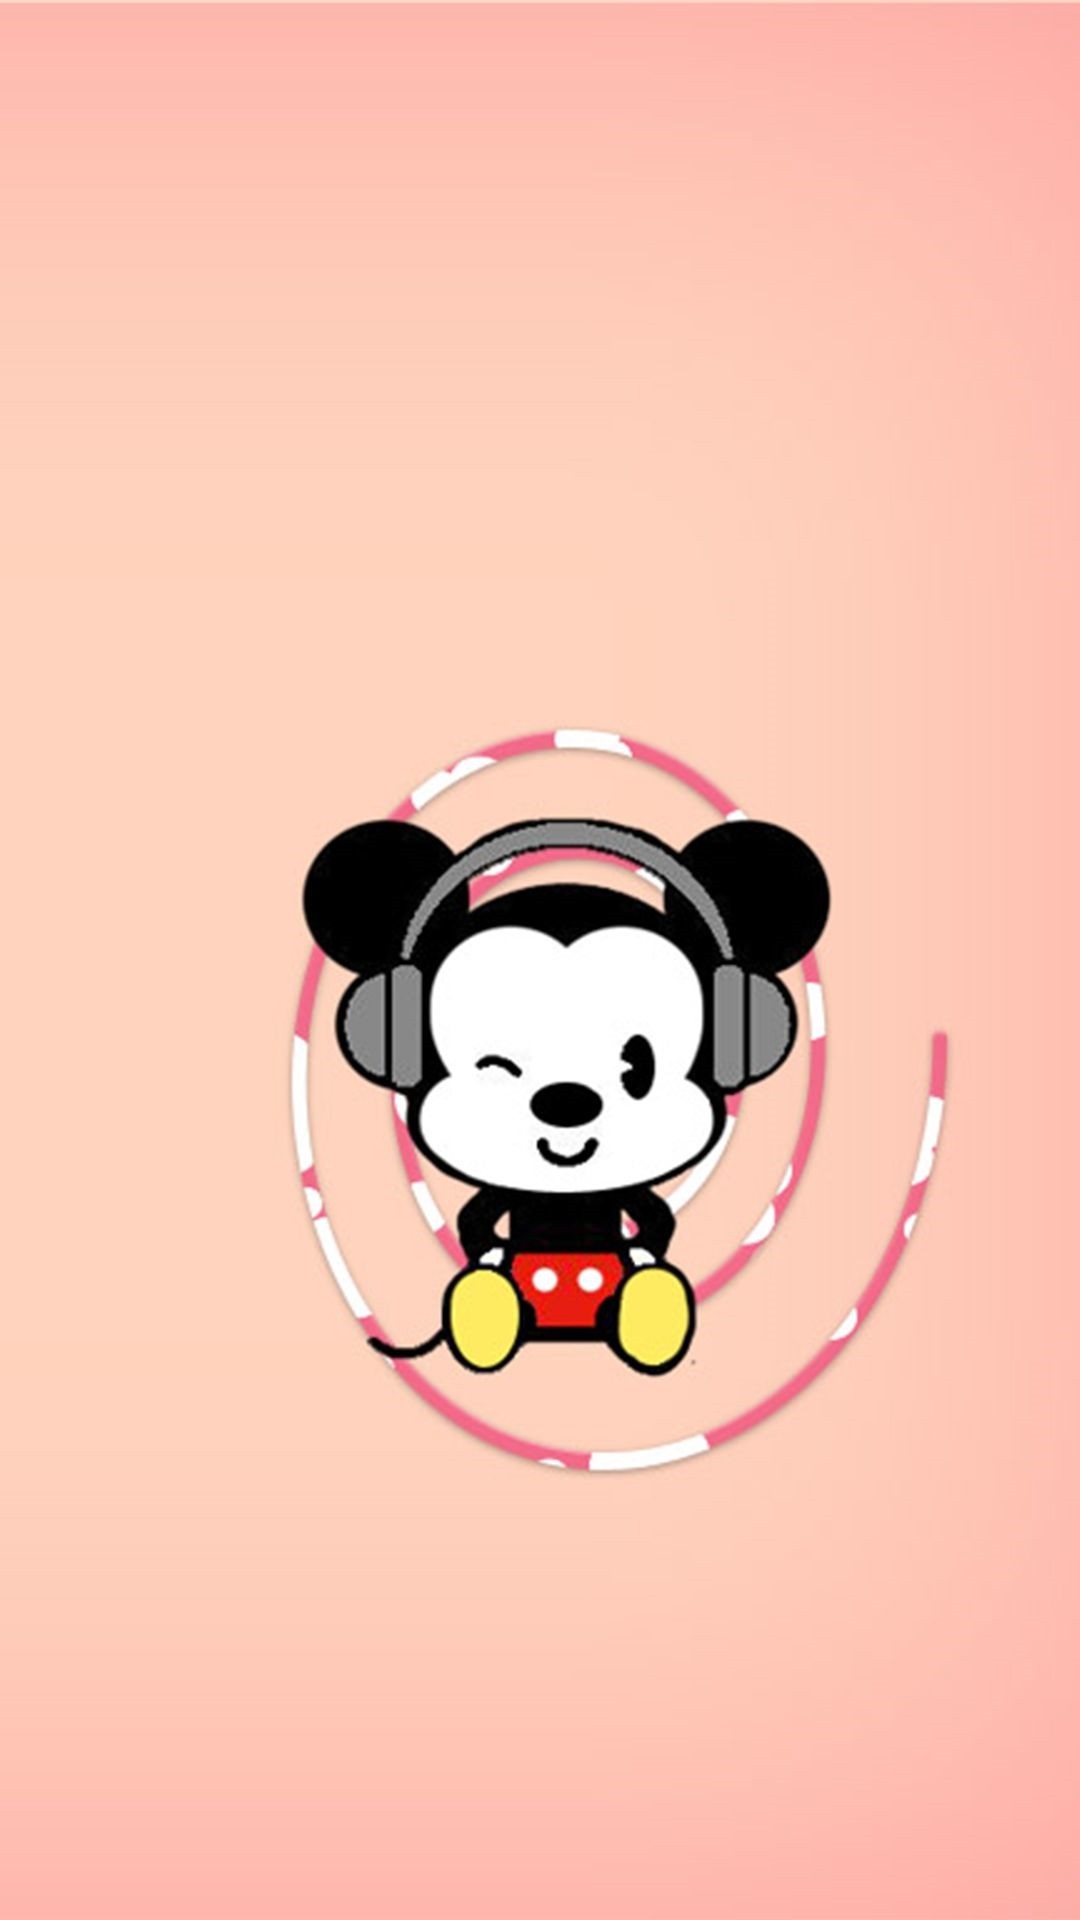 Cute Disney iPhone 5 wallpaper